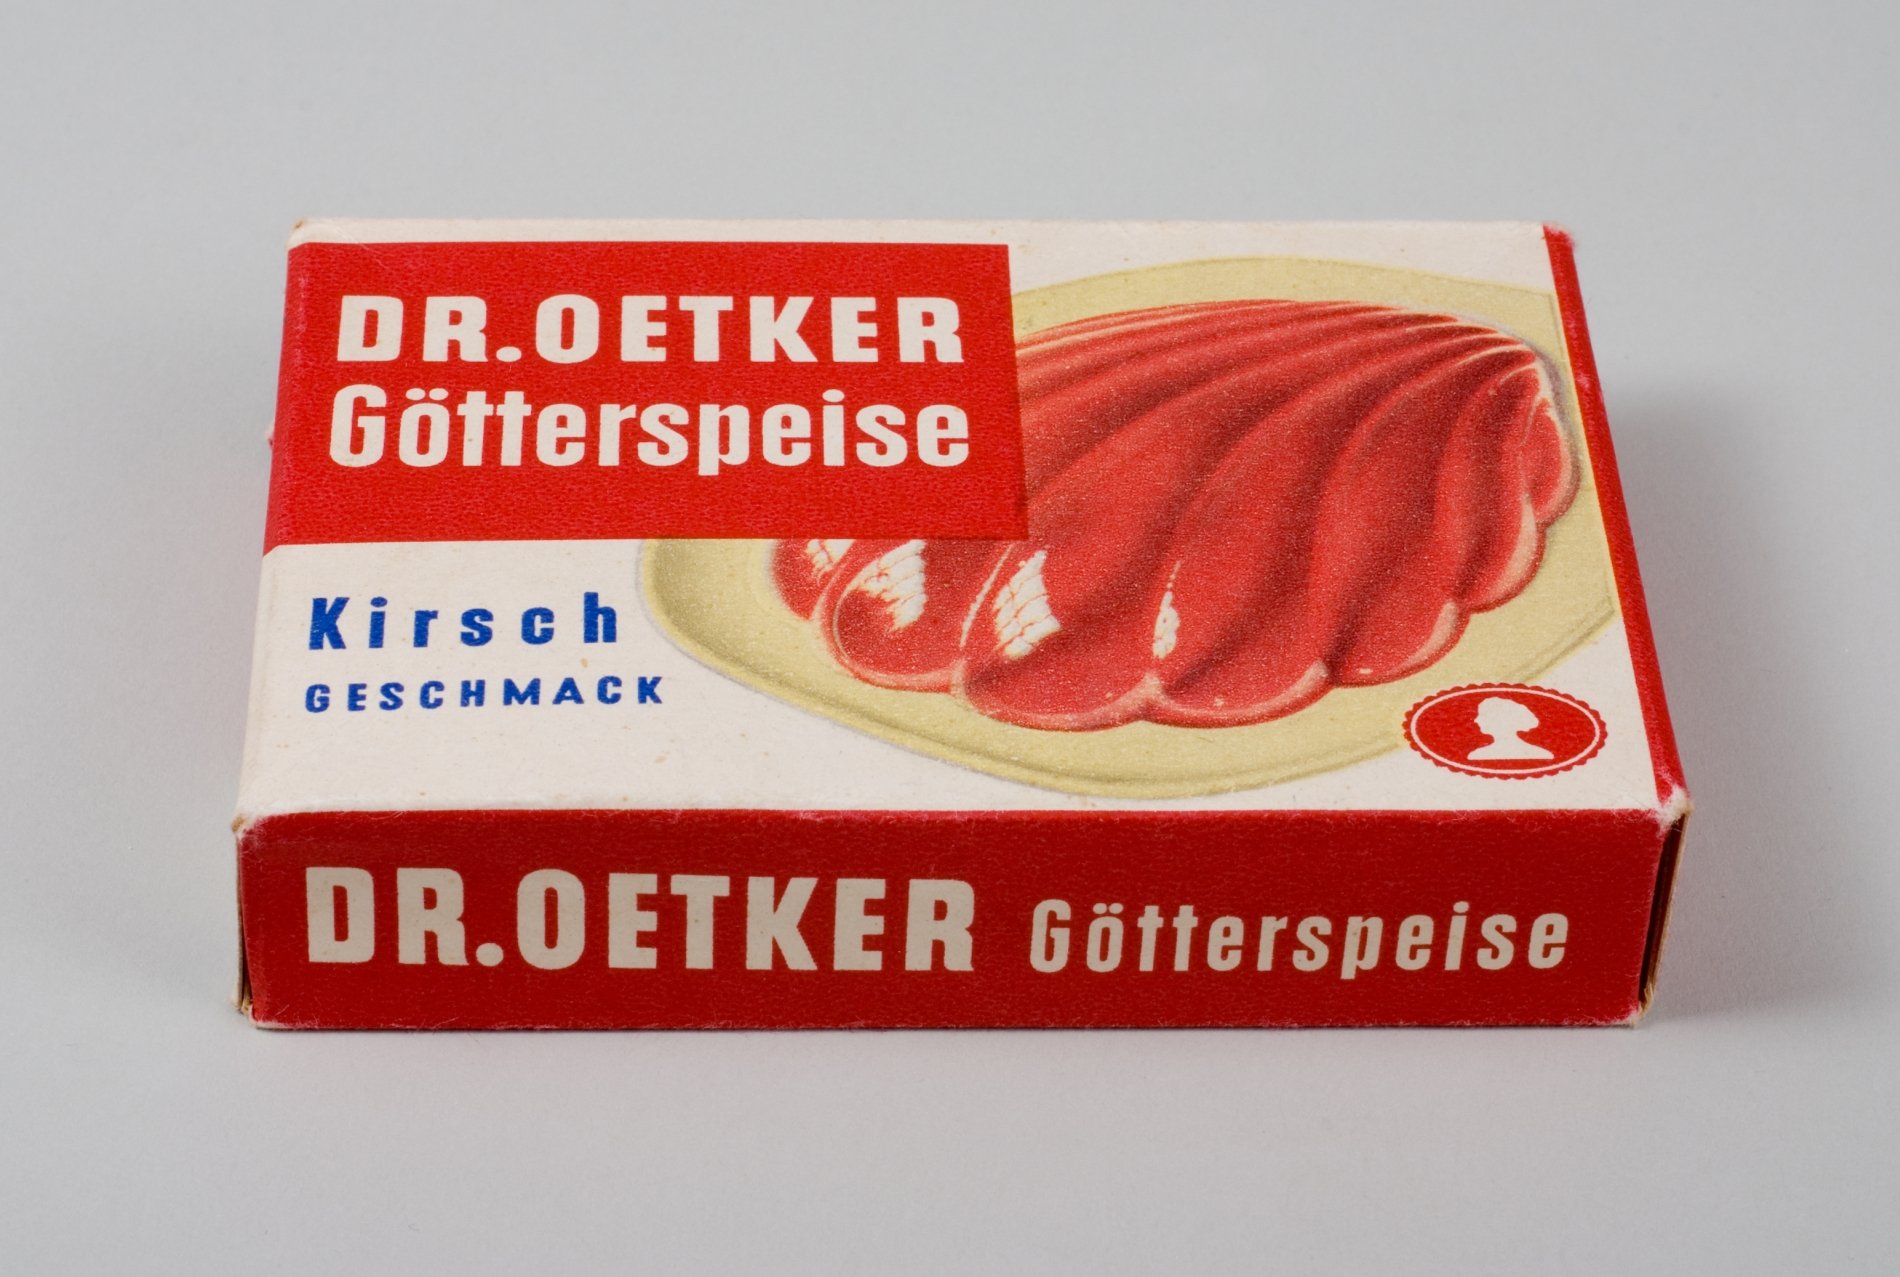 Packung "Dr. Oetker Götterspeise Kirsch Geschmack" mit Inhalt (Stiftung Domäne Dahlem - Landgut und Museum, Weiternutzung nur mit Genehmigung des Museums CC BY-NC-SA)